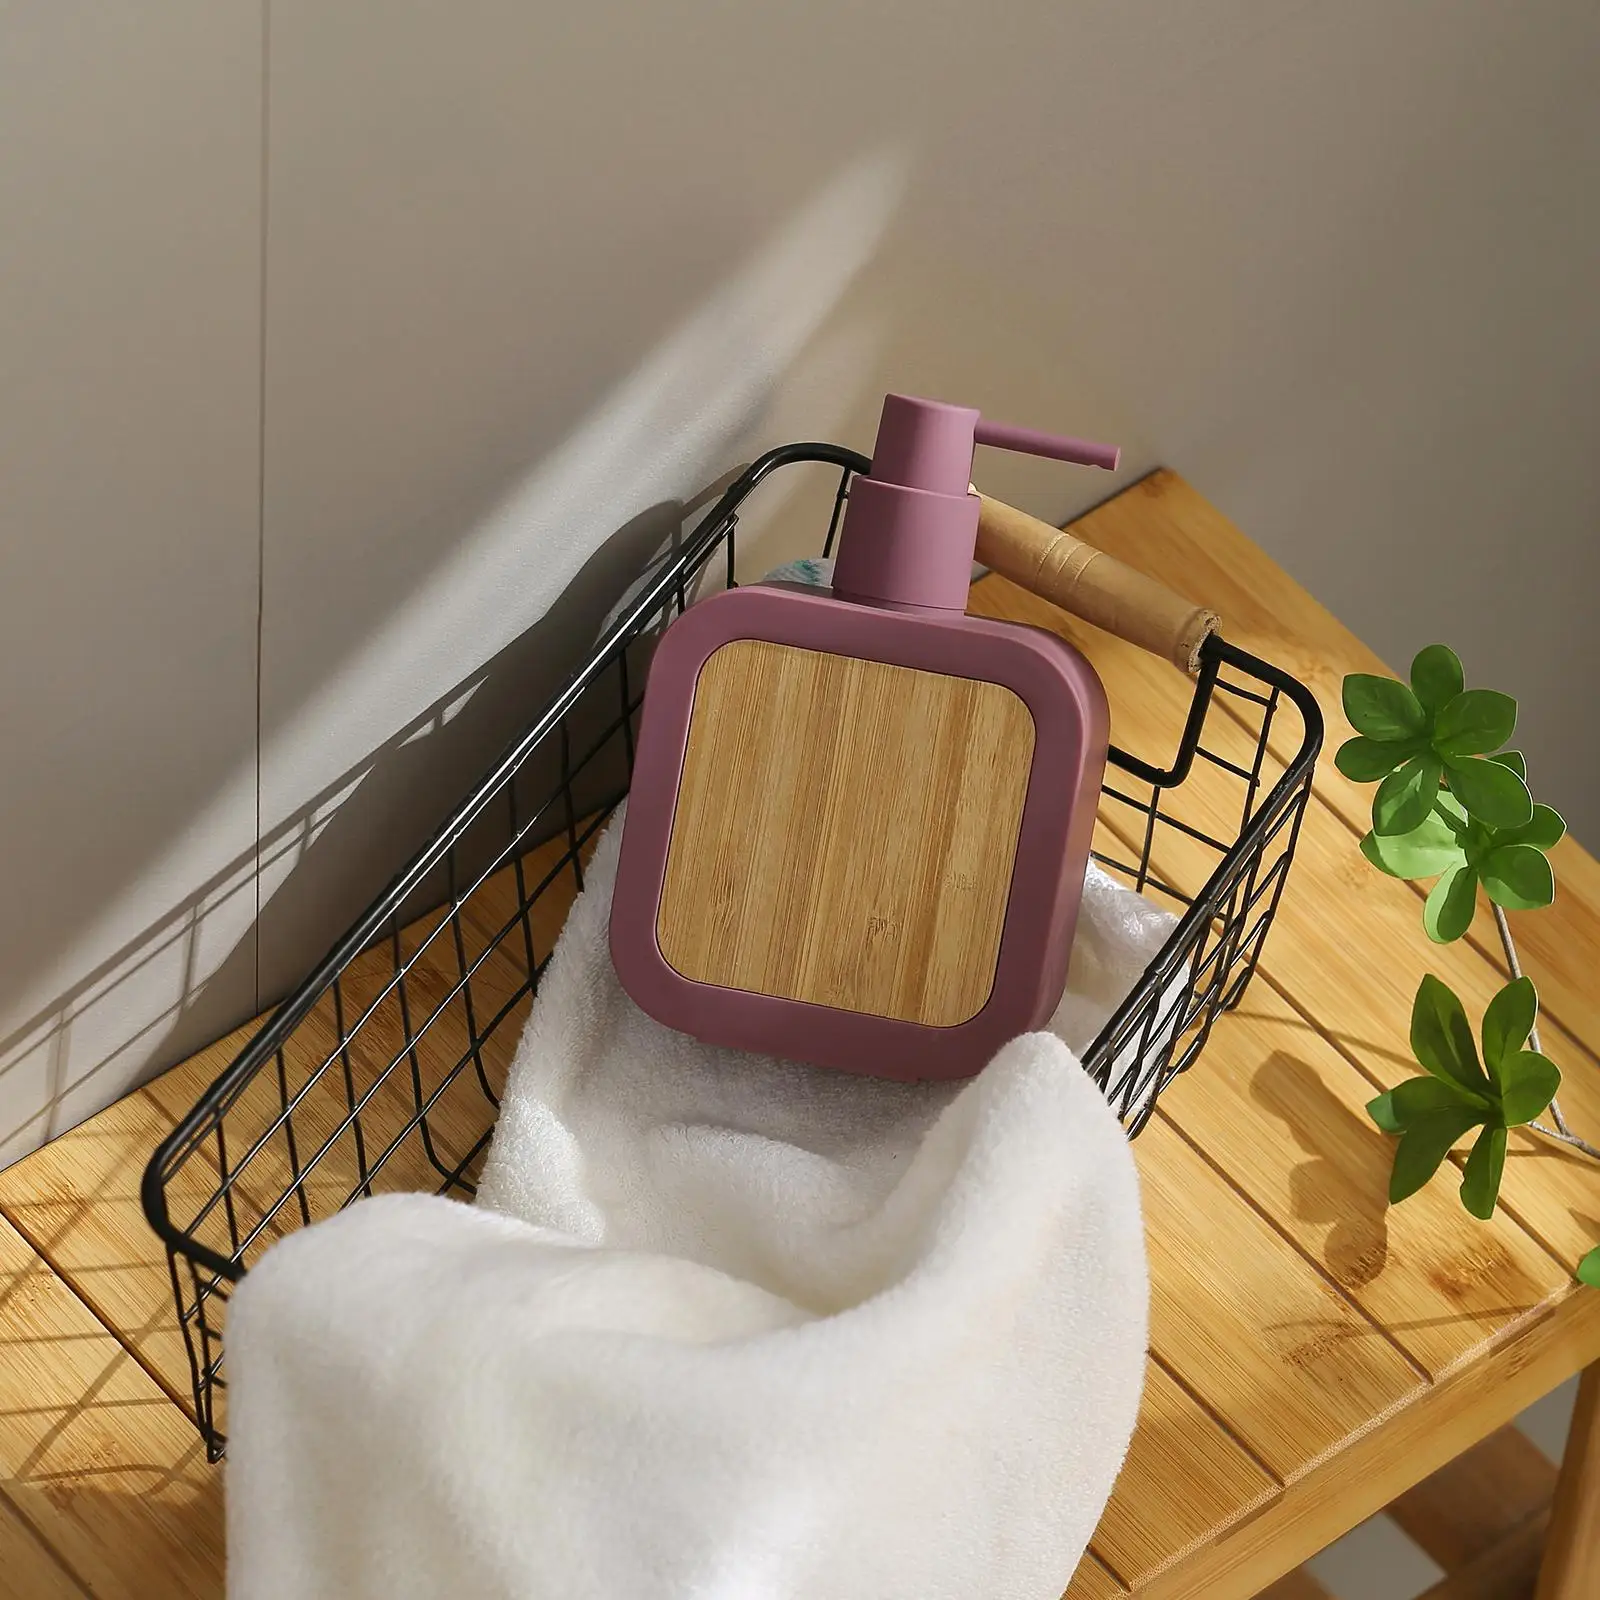 390ml Soap Dispenser Bathroom Manual Soap Dispenser Easy to Refill Kitchen